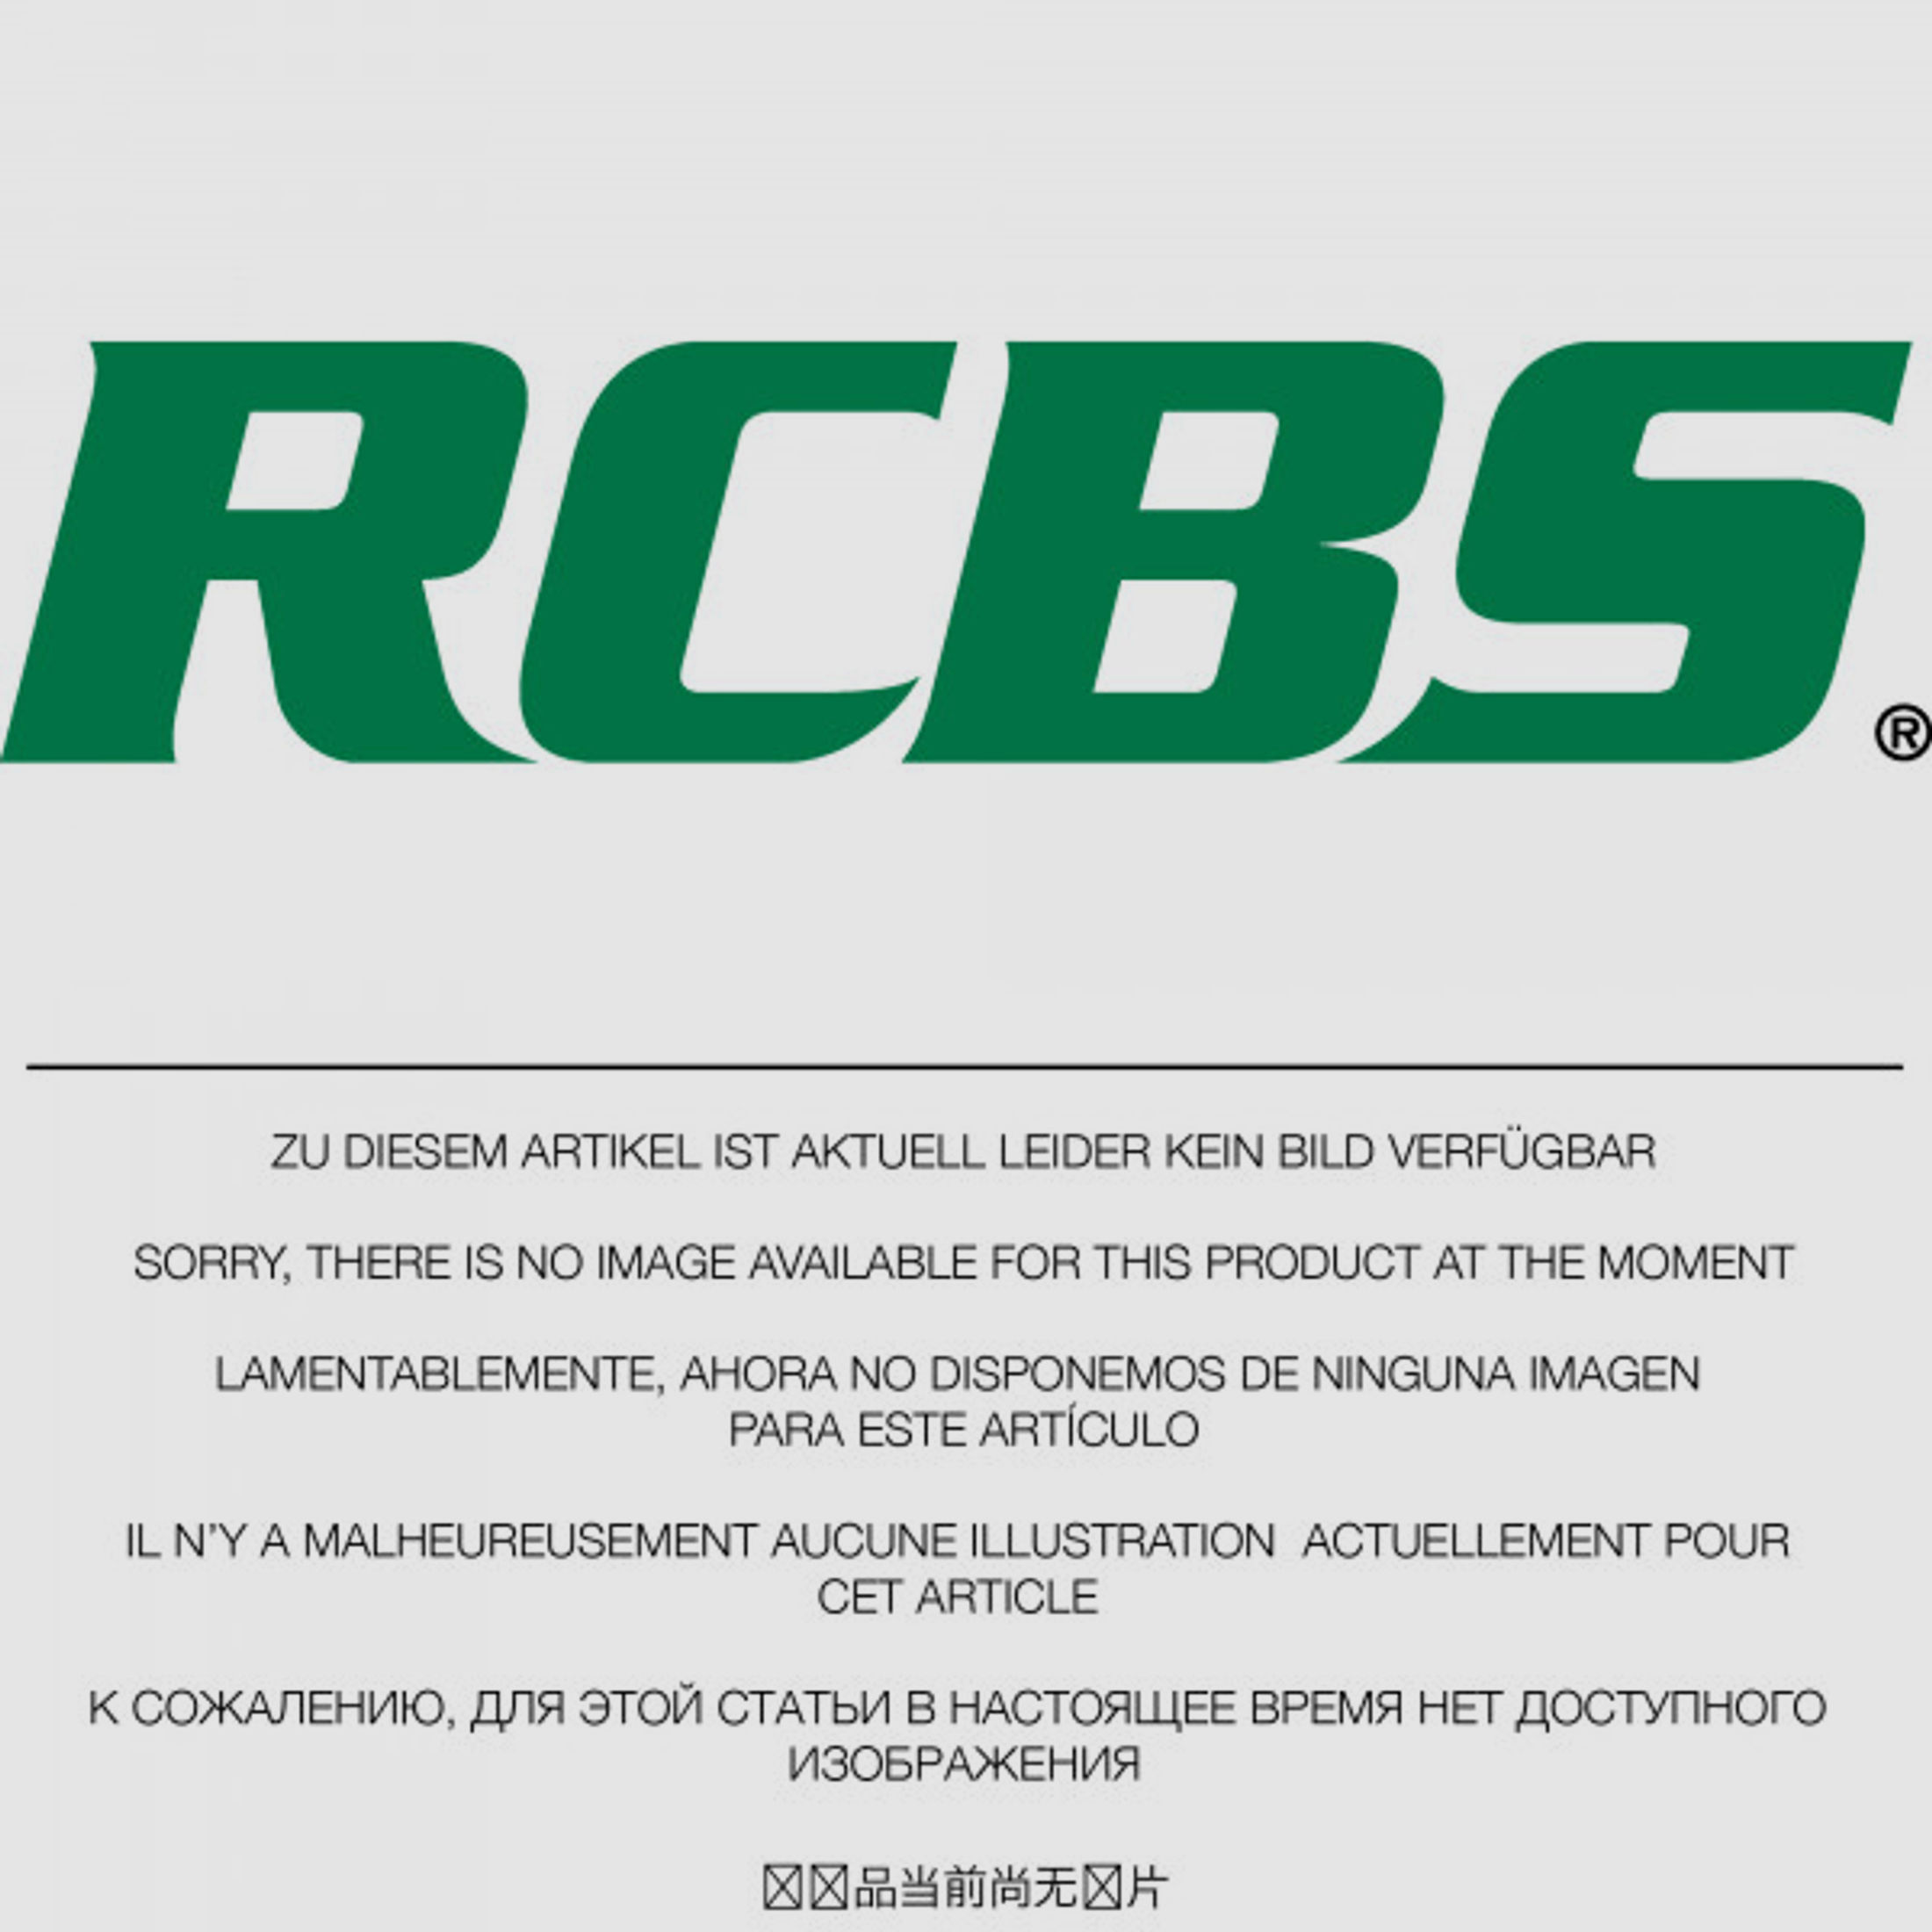 RCBS Lube-A-Matic Top Punch Geschoss Setzstempel Nr. 550 #85550